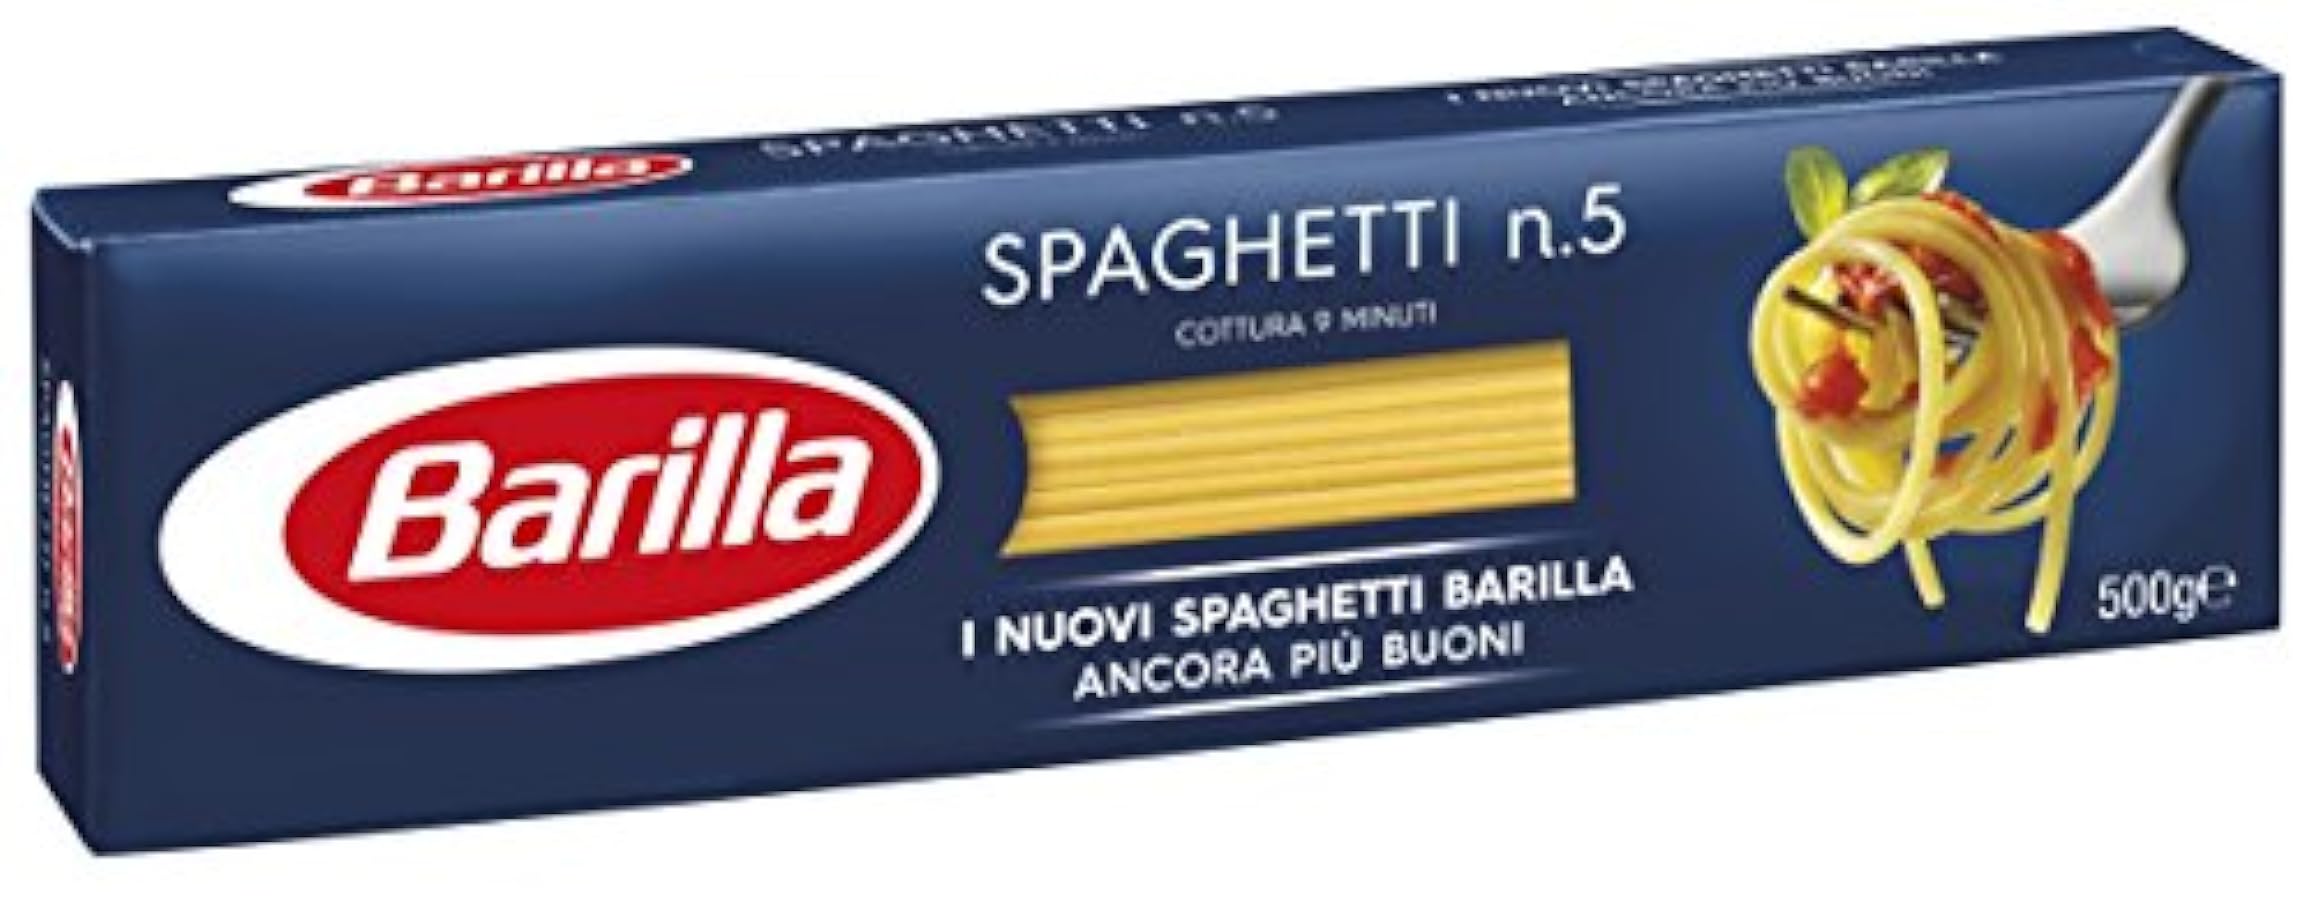 Barilla - Spaghetti n. 5 - 35 confezioni da 500 g [17.5